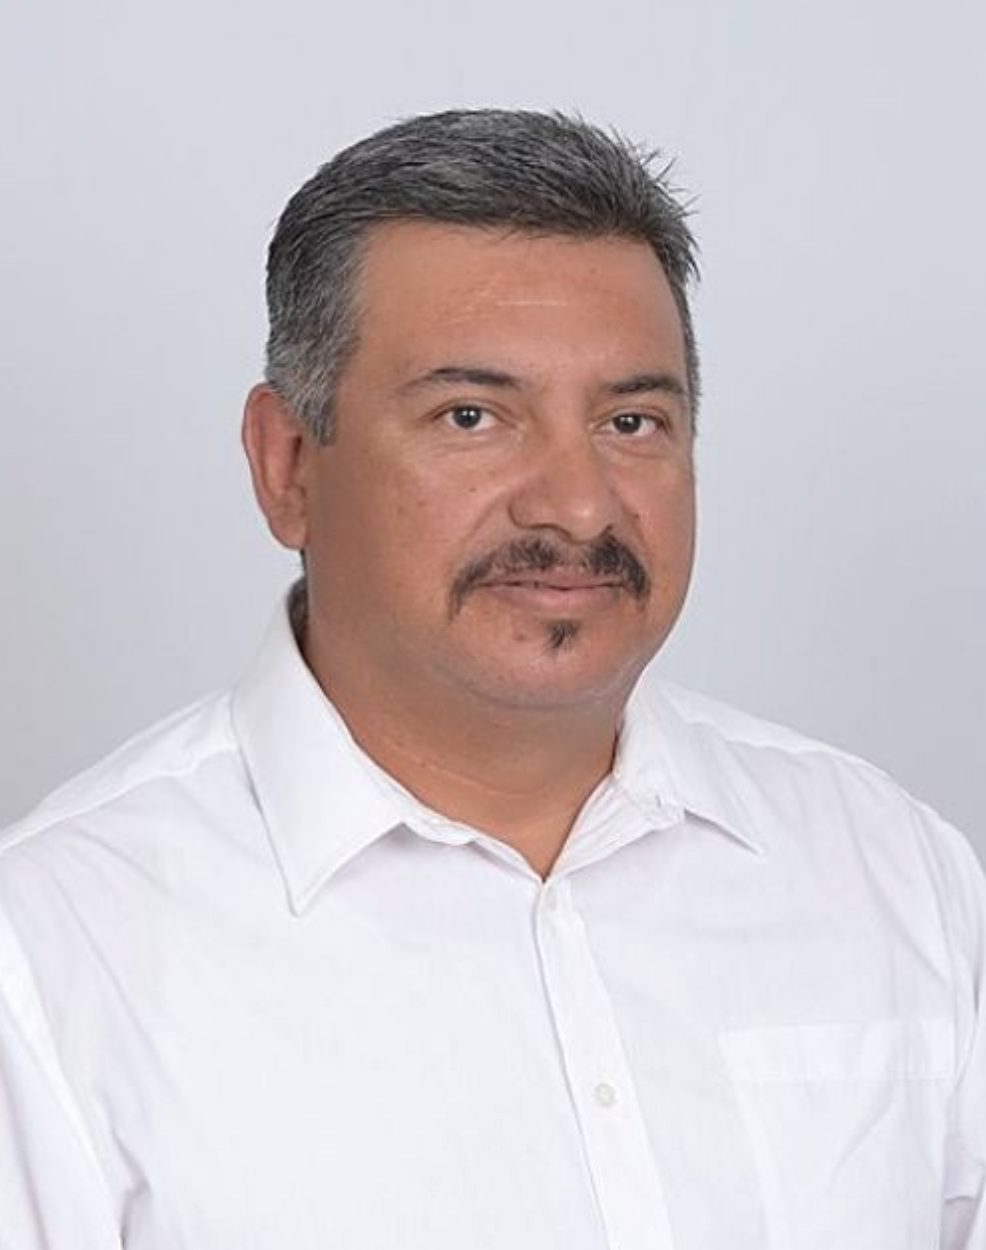 A photo of Roberto Estrada